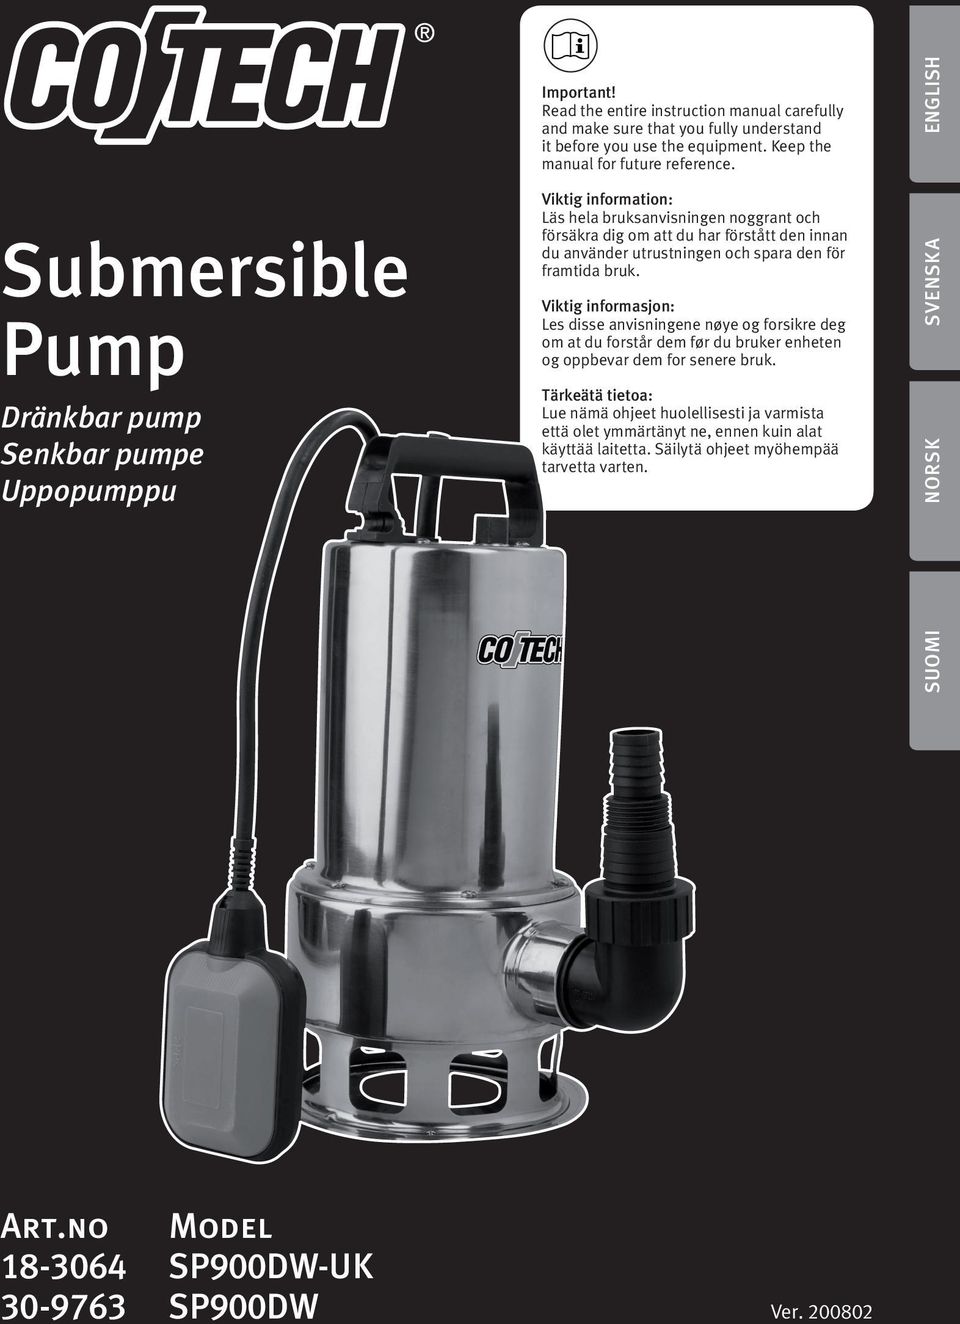 SVENSKA Submersible Pump Viktig information: Läs hela bruksanvisningen noggrant och försäkra dig om att du har förstått den innan du använder utrustningen och spara den för framtida bruk.